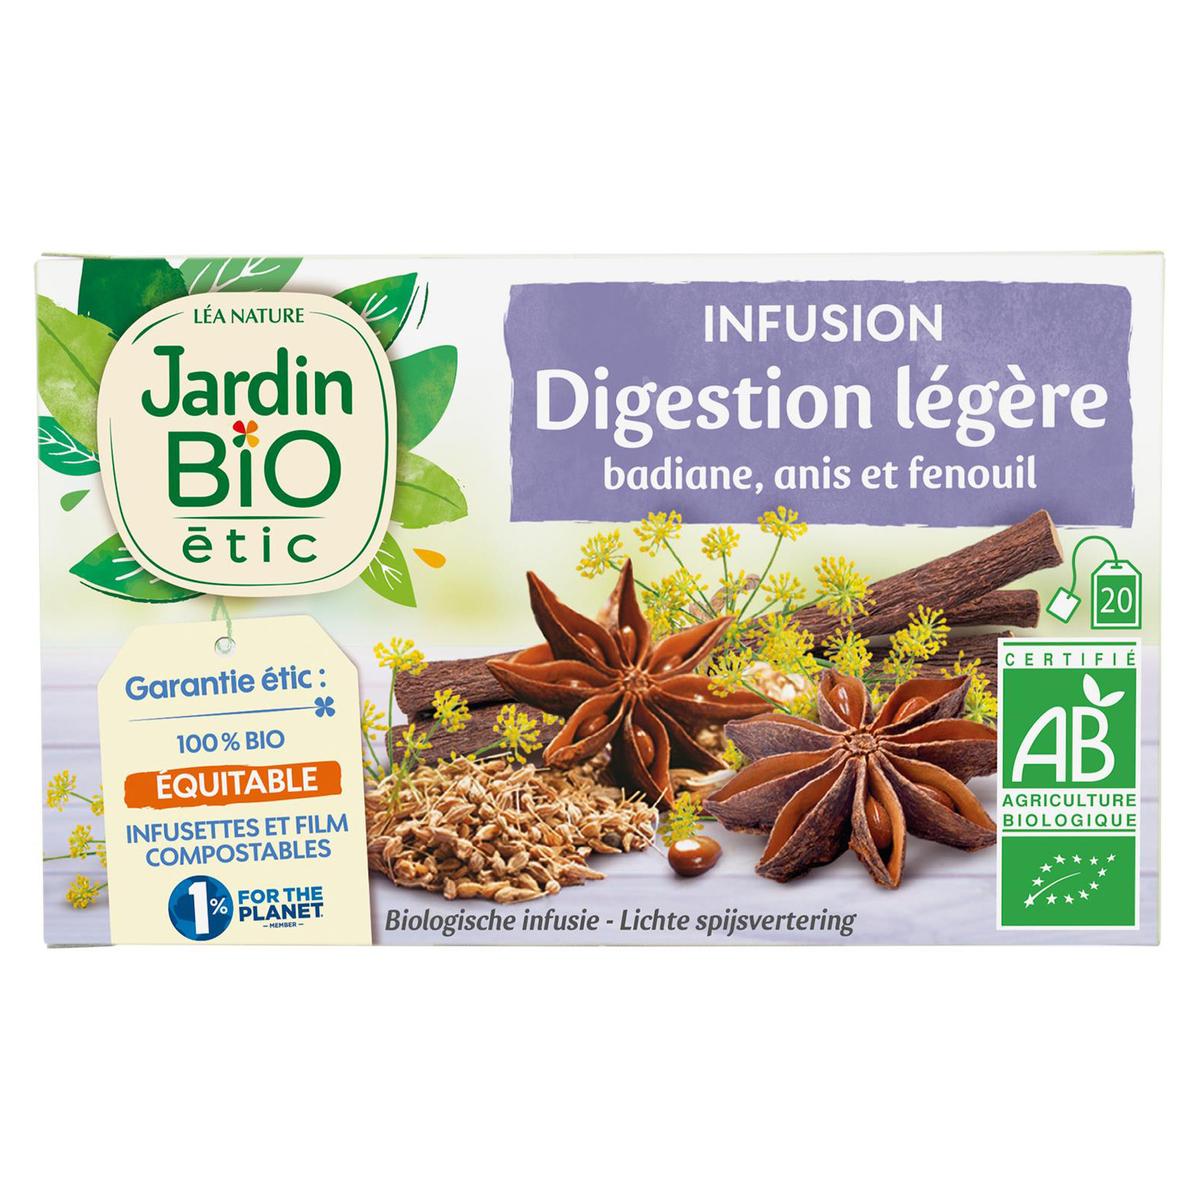 JARDIN BIO ETIC Infusion digestion légère badiane, anis et fenouil 20  sachets 30g pas cher 